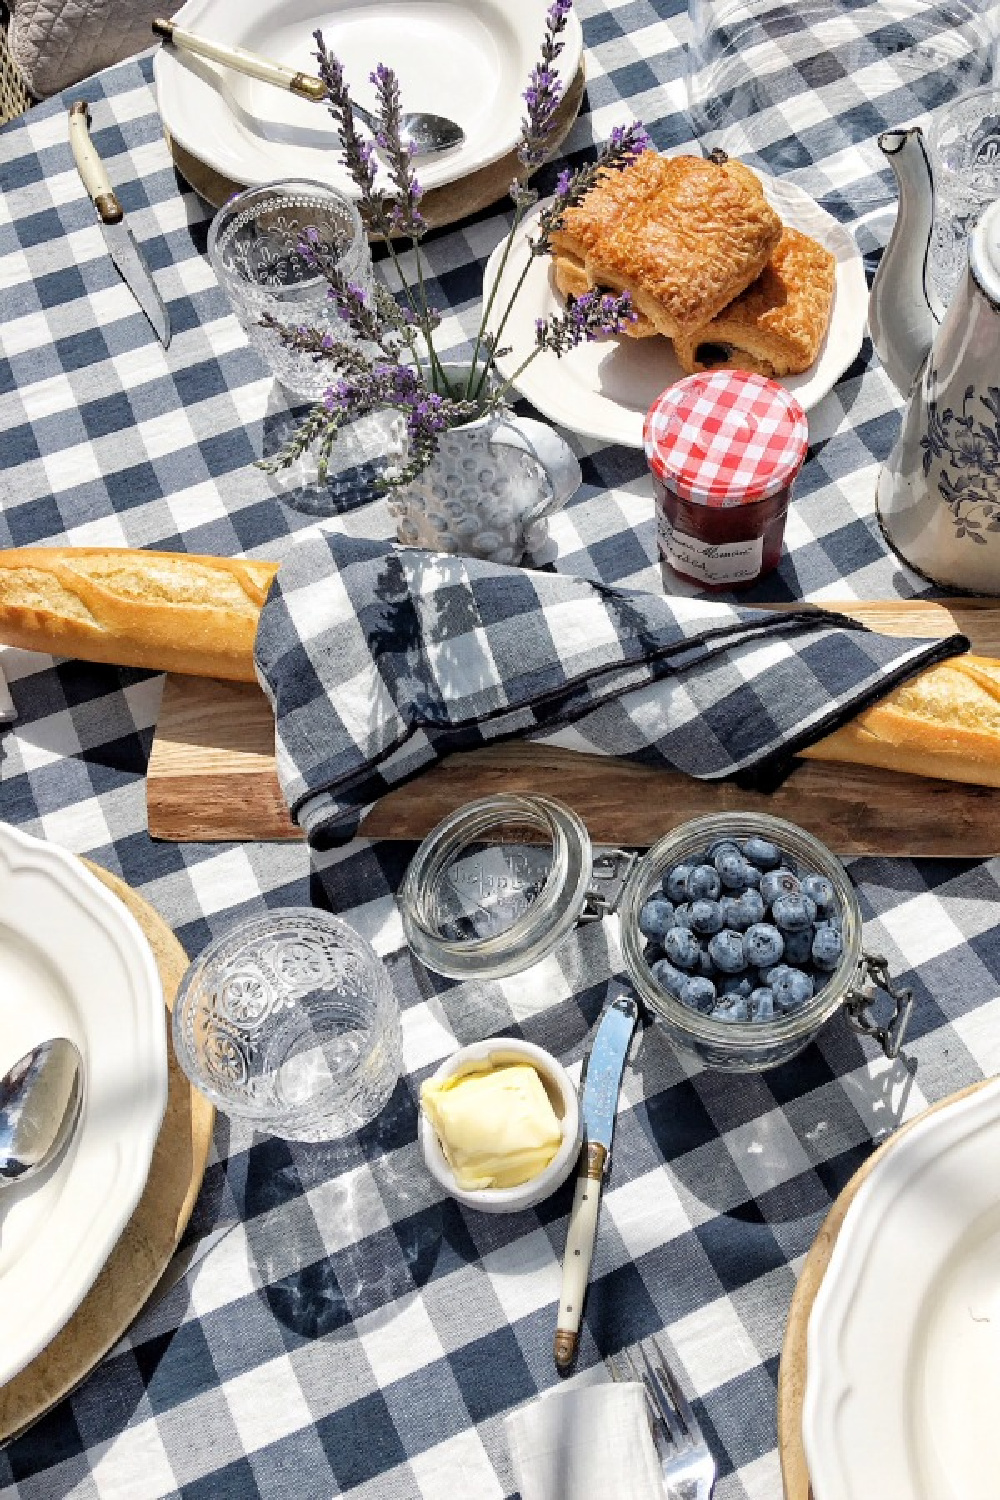 French tablescape with navy blue check linens (Maison de Vacances) from Vivi et Margot, bagutte, pastries, and berries. #vivietmargot #tablescape #check #gingham #tablecloth #baguette #dining #frenchfarmhouse